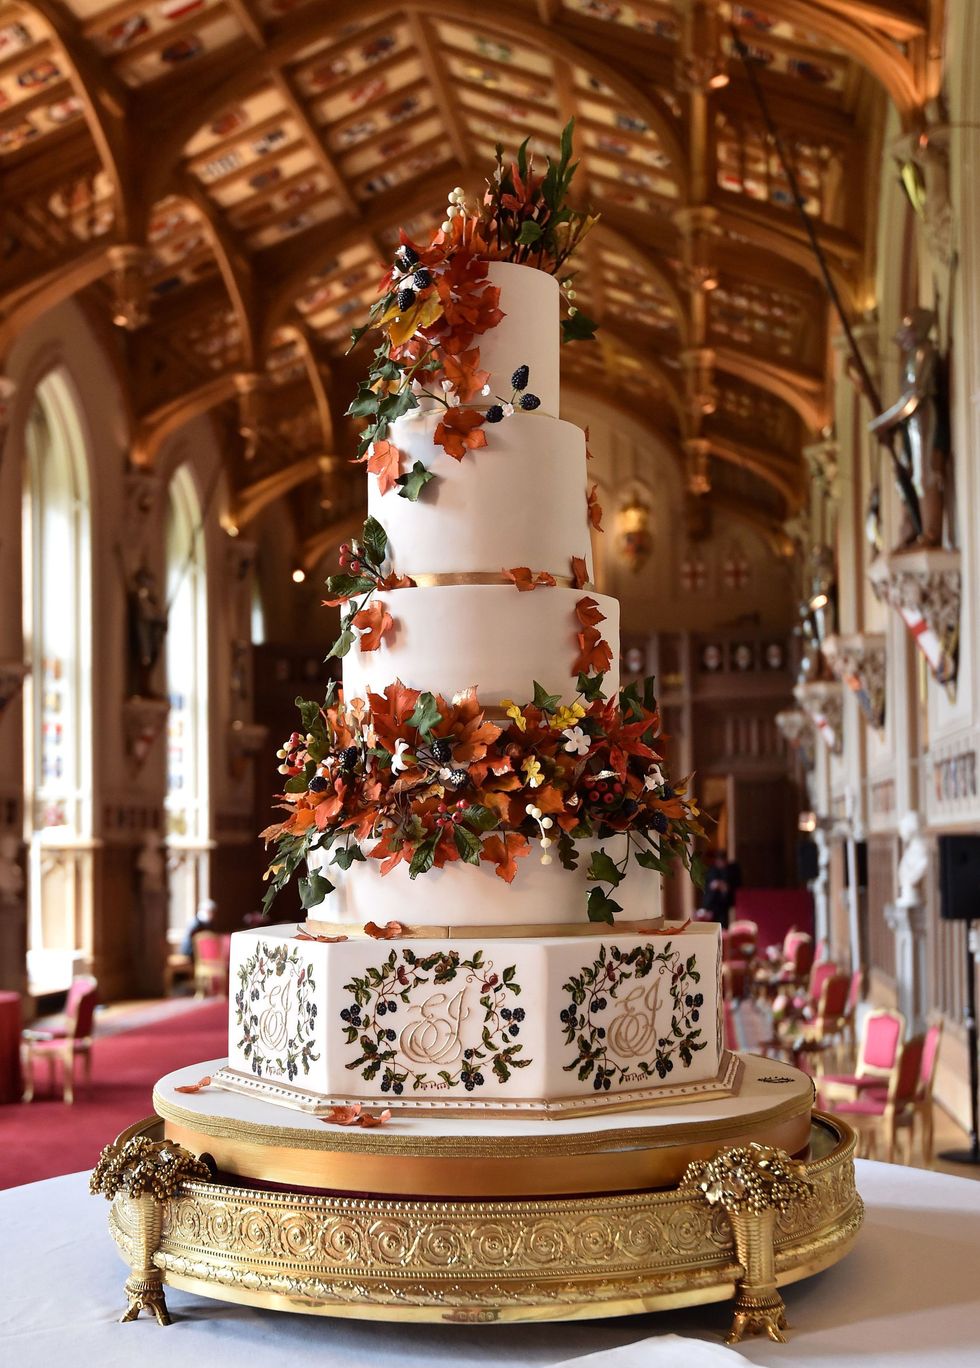 Princess Eugenie wedding cake